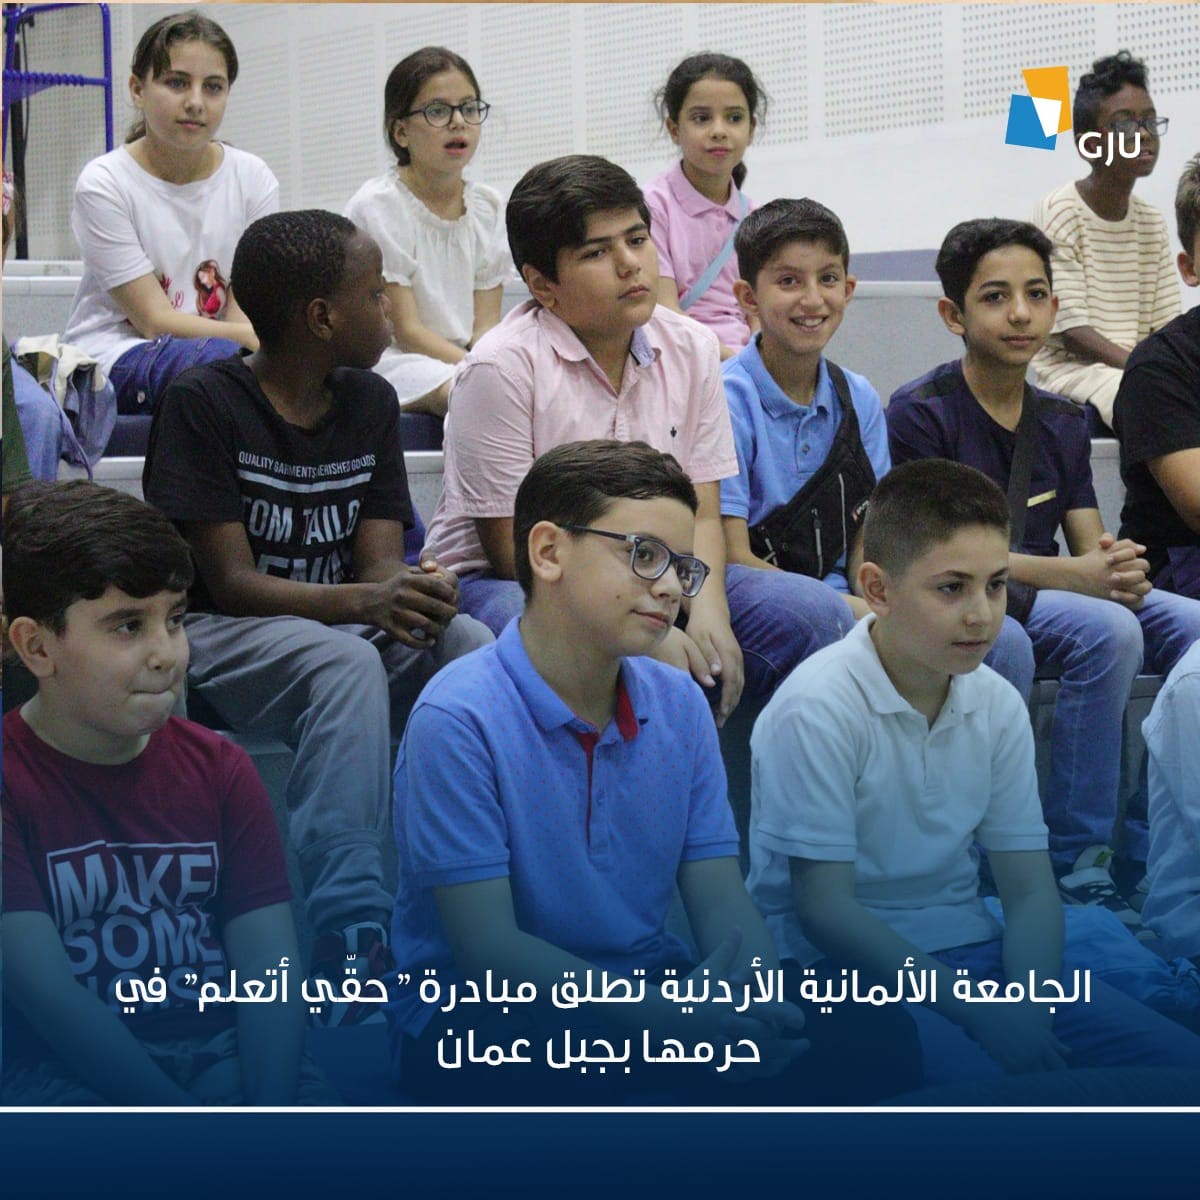 الجامعة الألمانية الأردنية تطلق مبادرة "حقّي أتعلم" في حرمها بجبل عمان